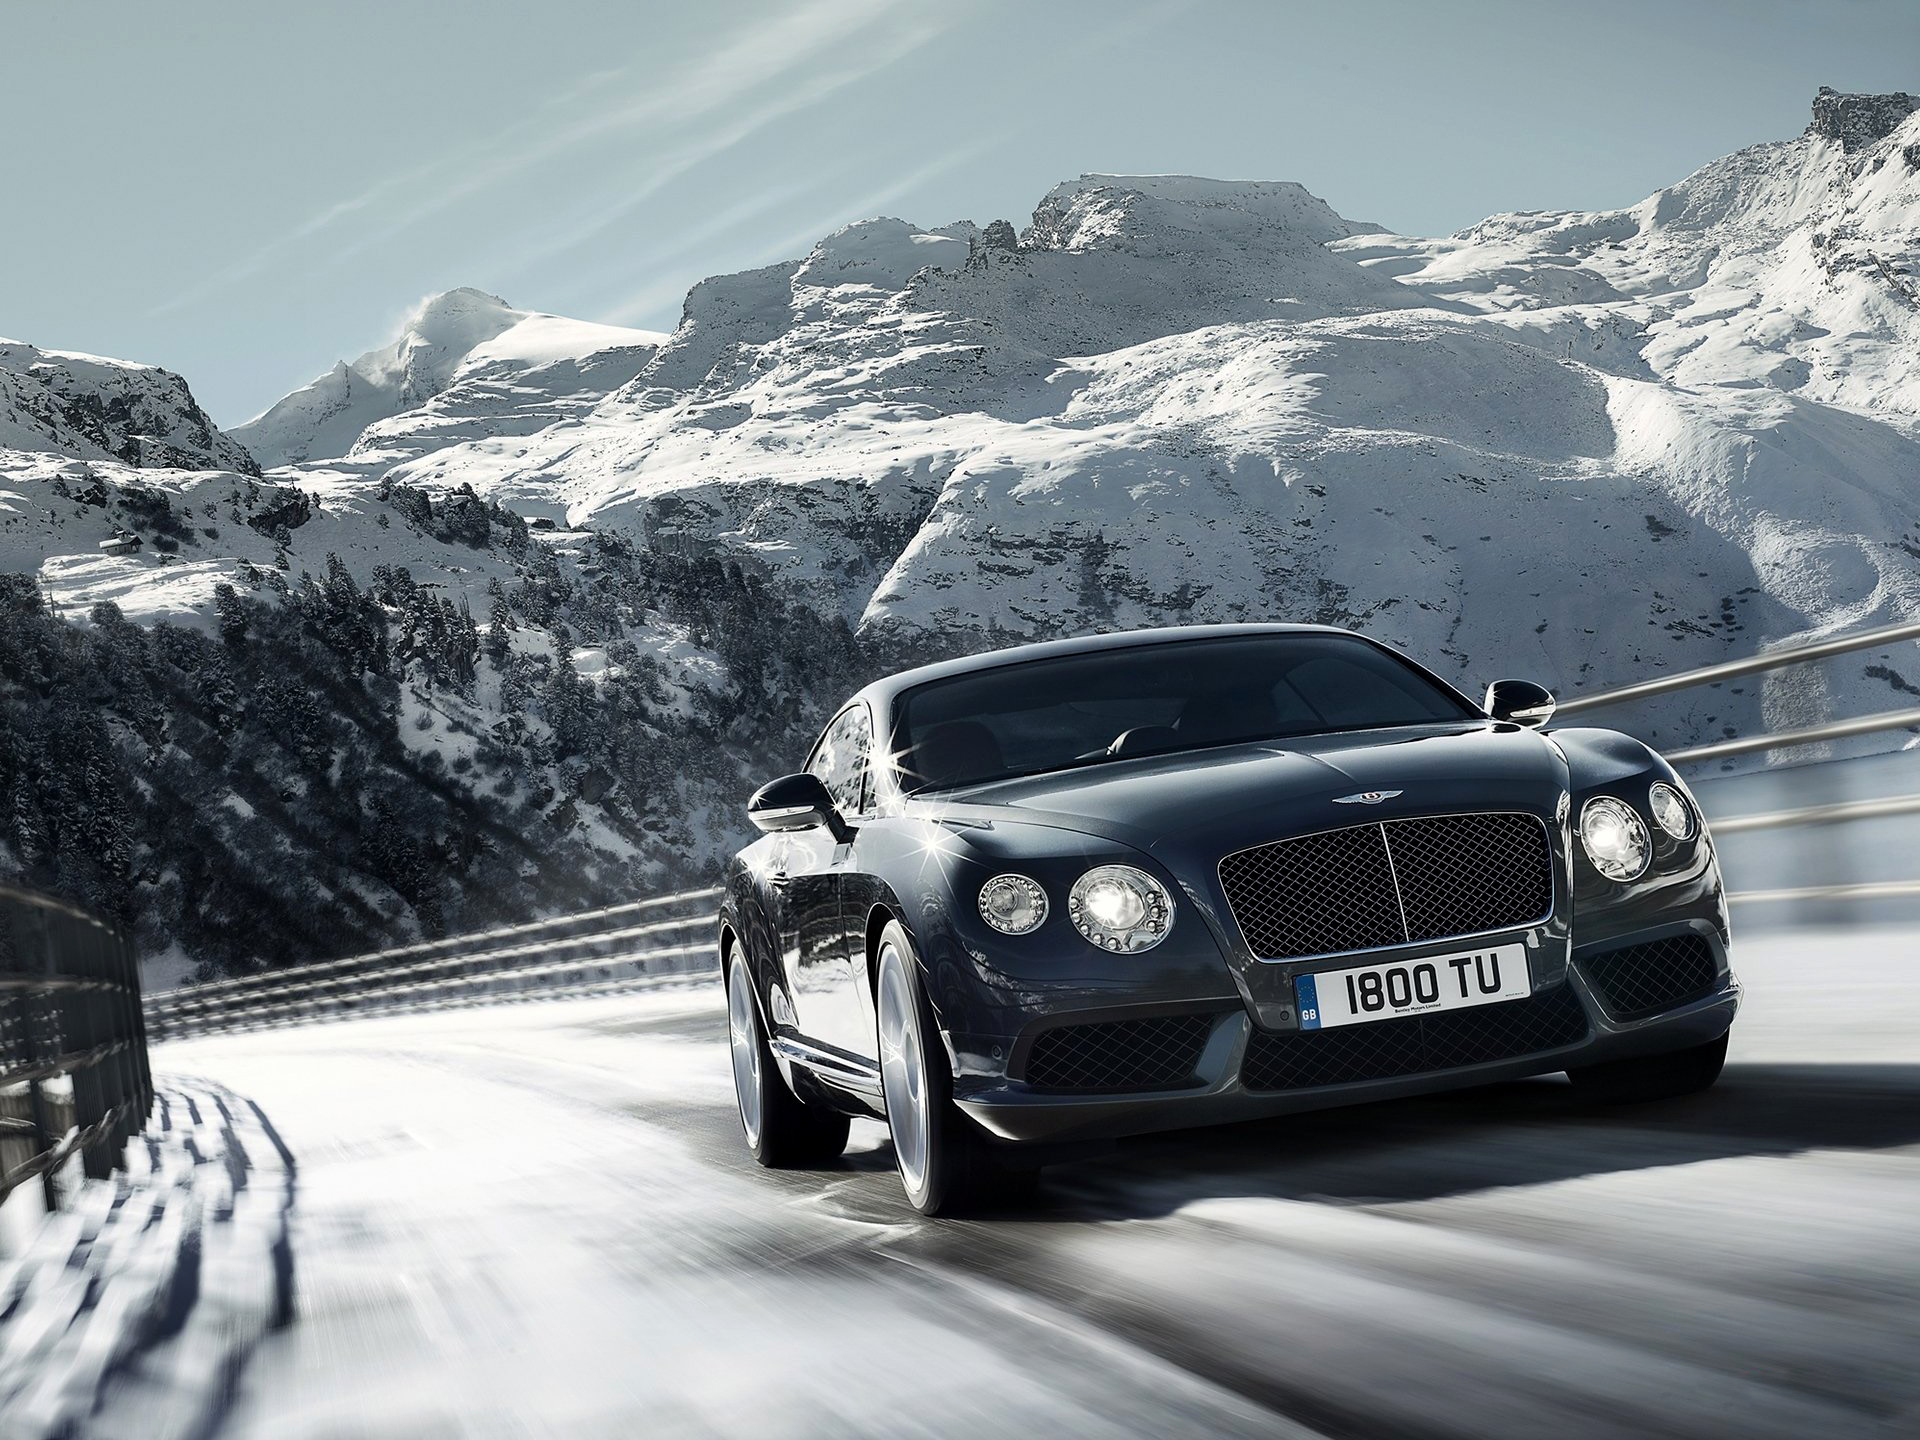 Free download wallpaper Bentley, Vehicles, Bentley Continental Gt V8 on your PC desktop